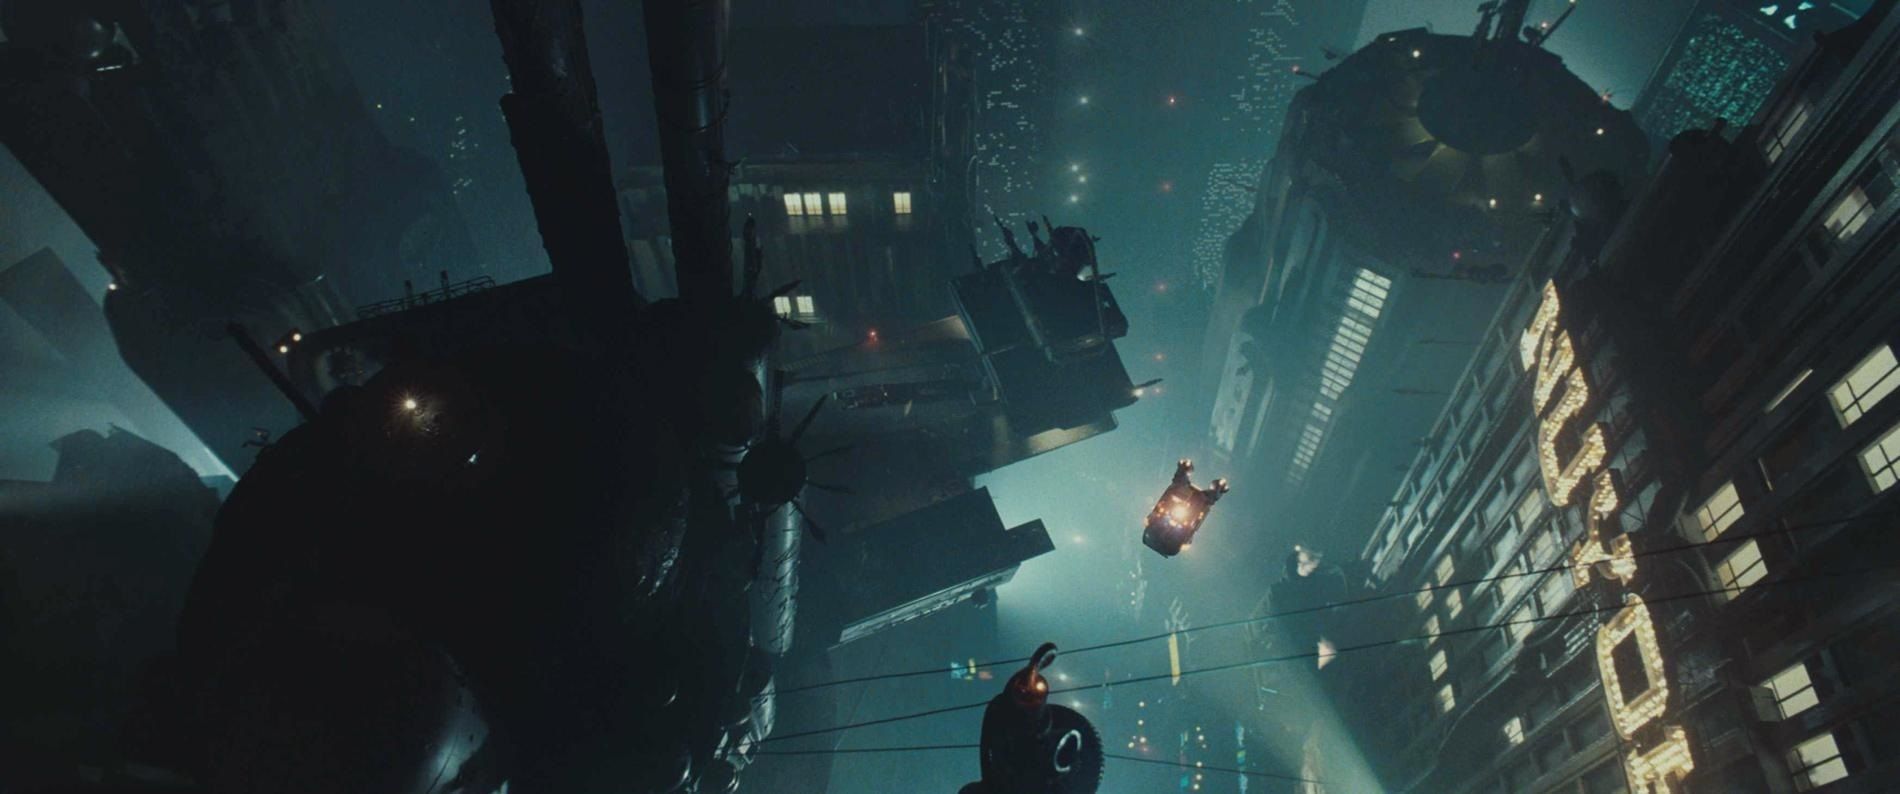 Llega 'Blade Runner 2099', la serie basada en la mítica película de ciencia ficción de los años 80